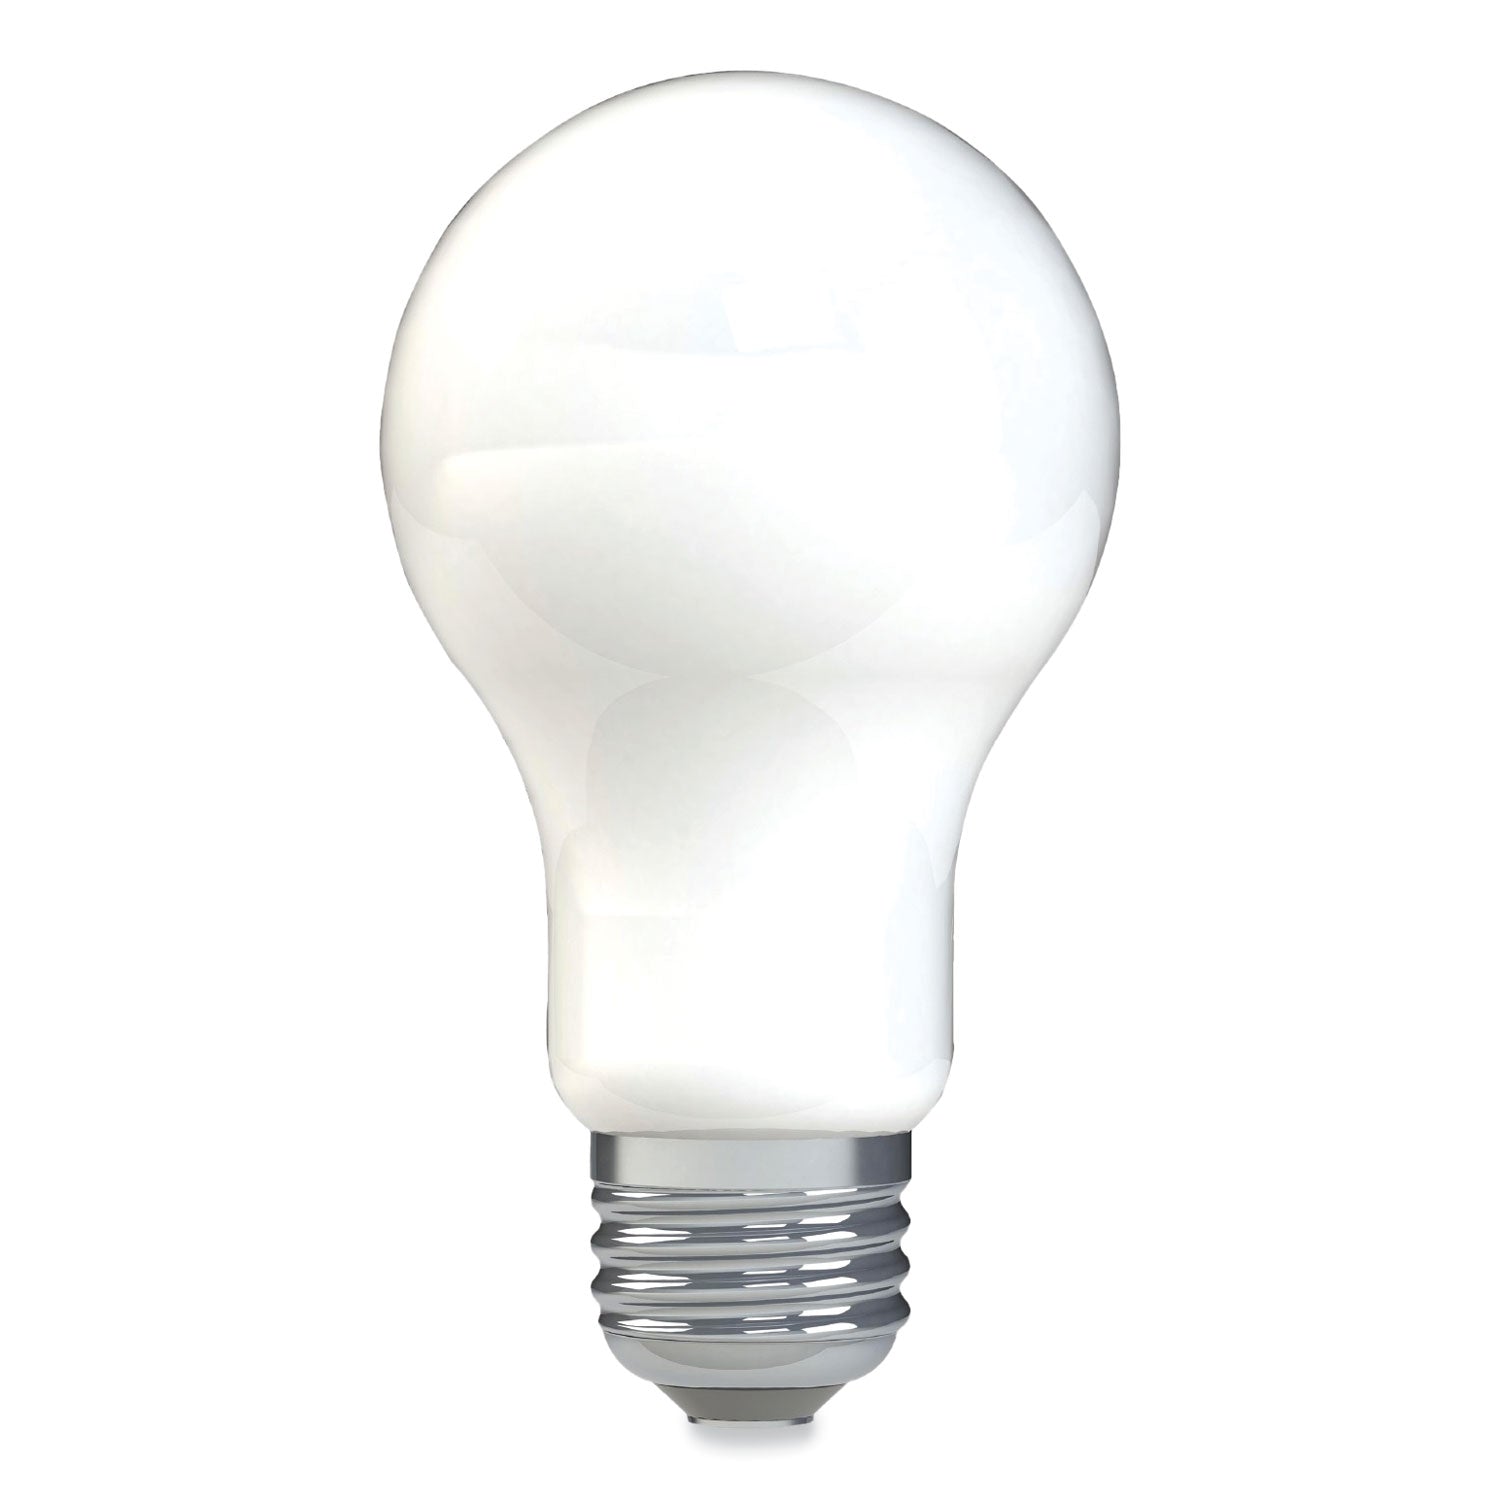 reveal-hd+-led-a19-light-bulb-8-w-4-pack_gel93129439 - 2